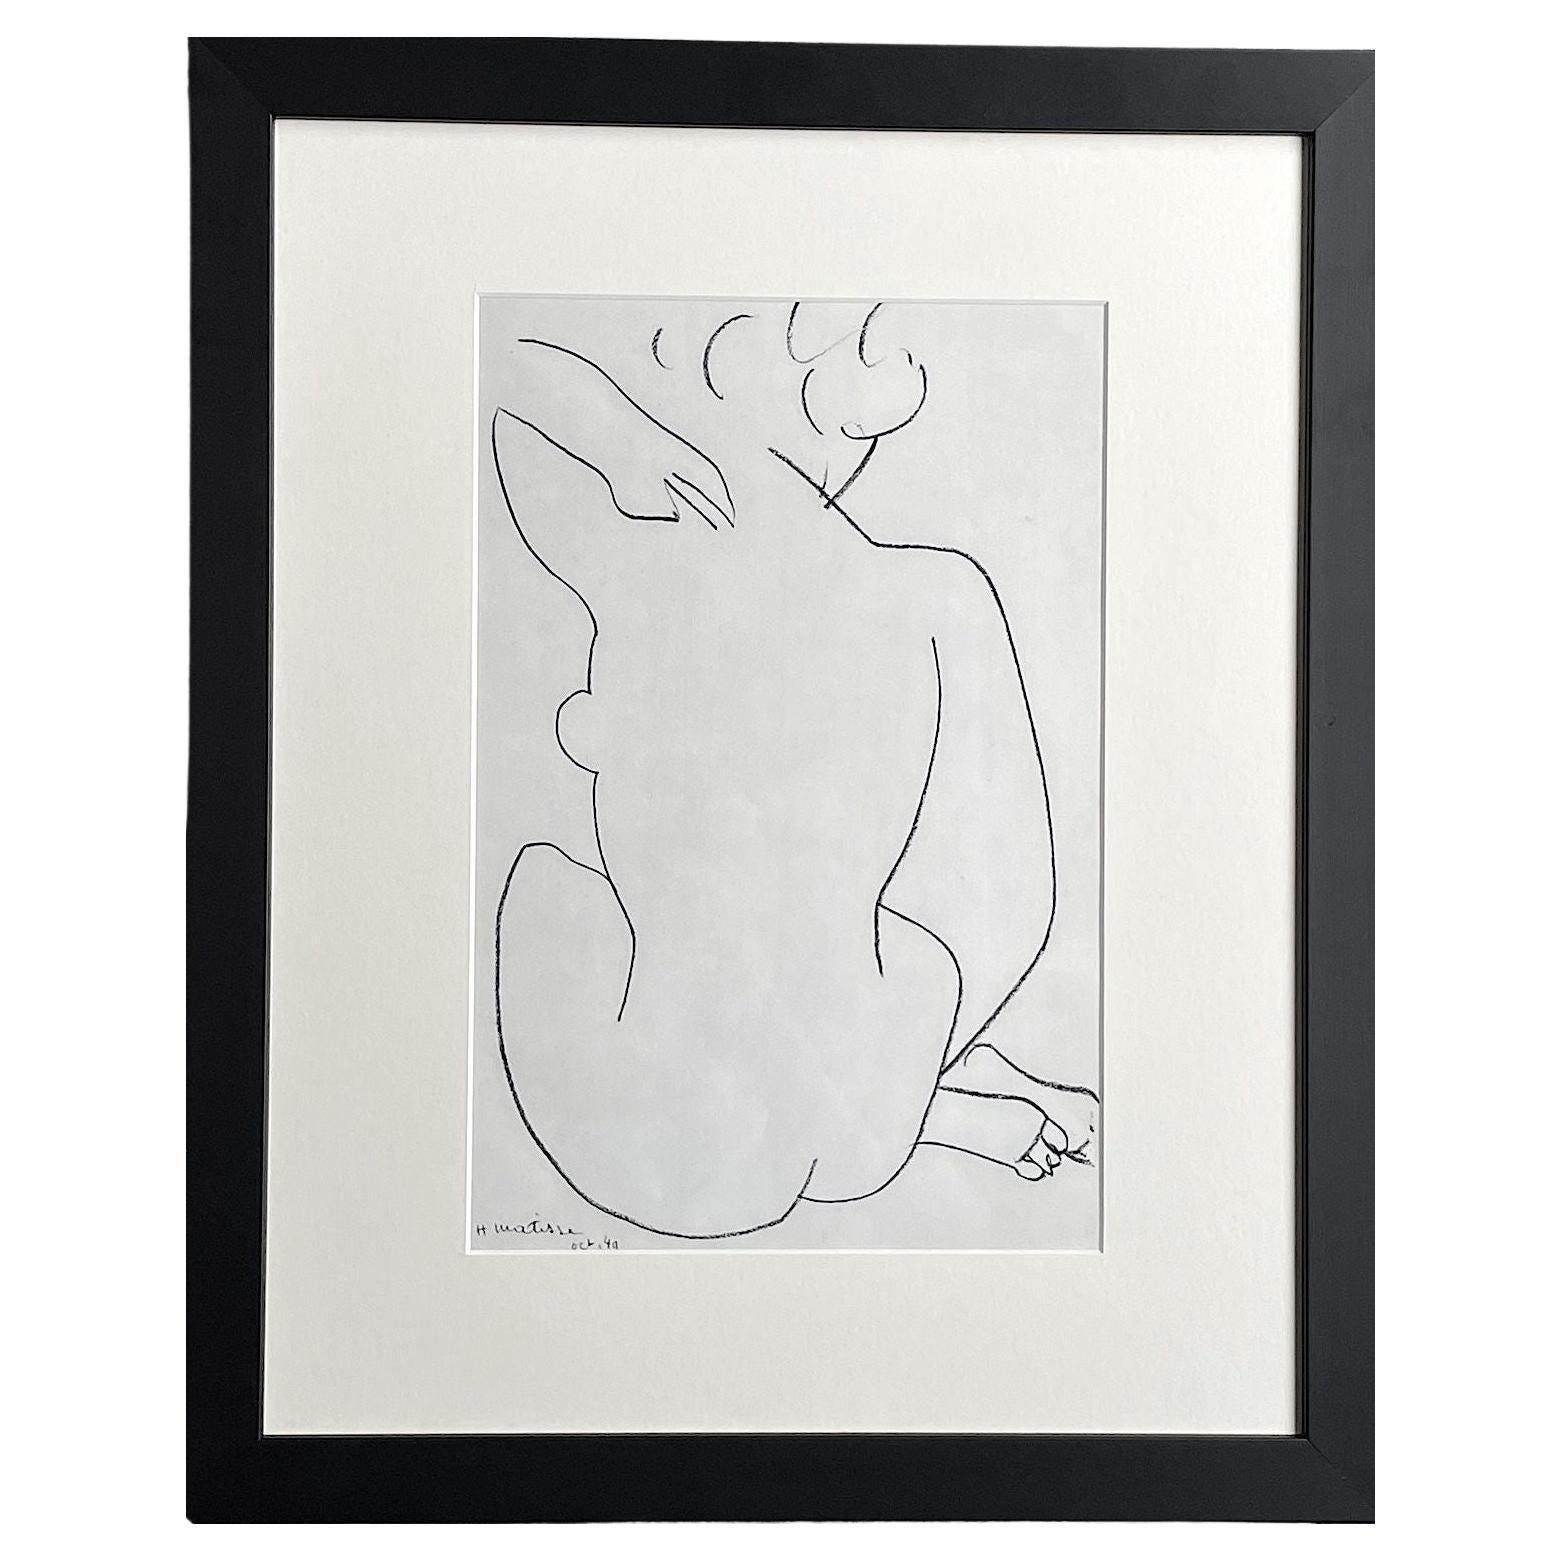 Henri Matisse „Akt“ Lithographie, 1954 von Mourlot Freres Druckerei, Paris